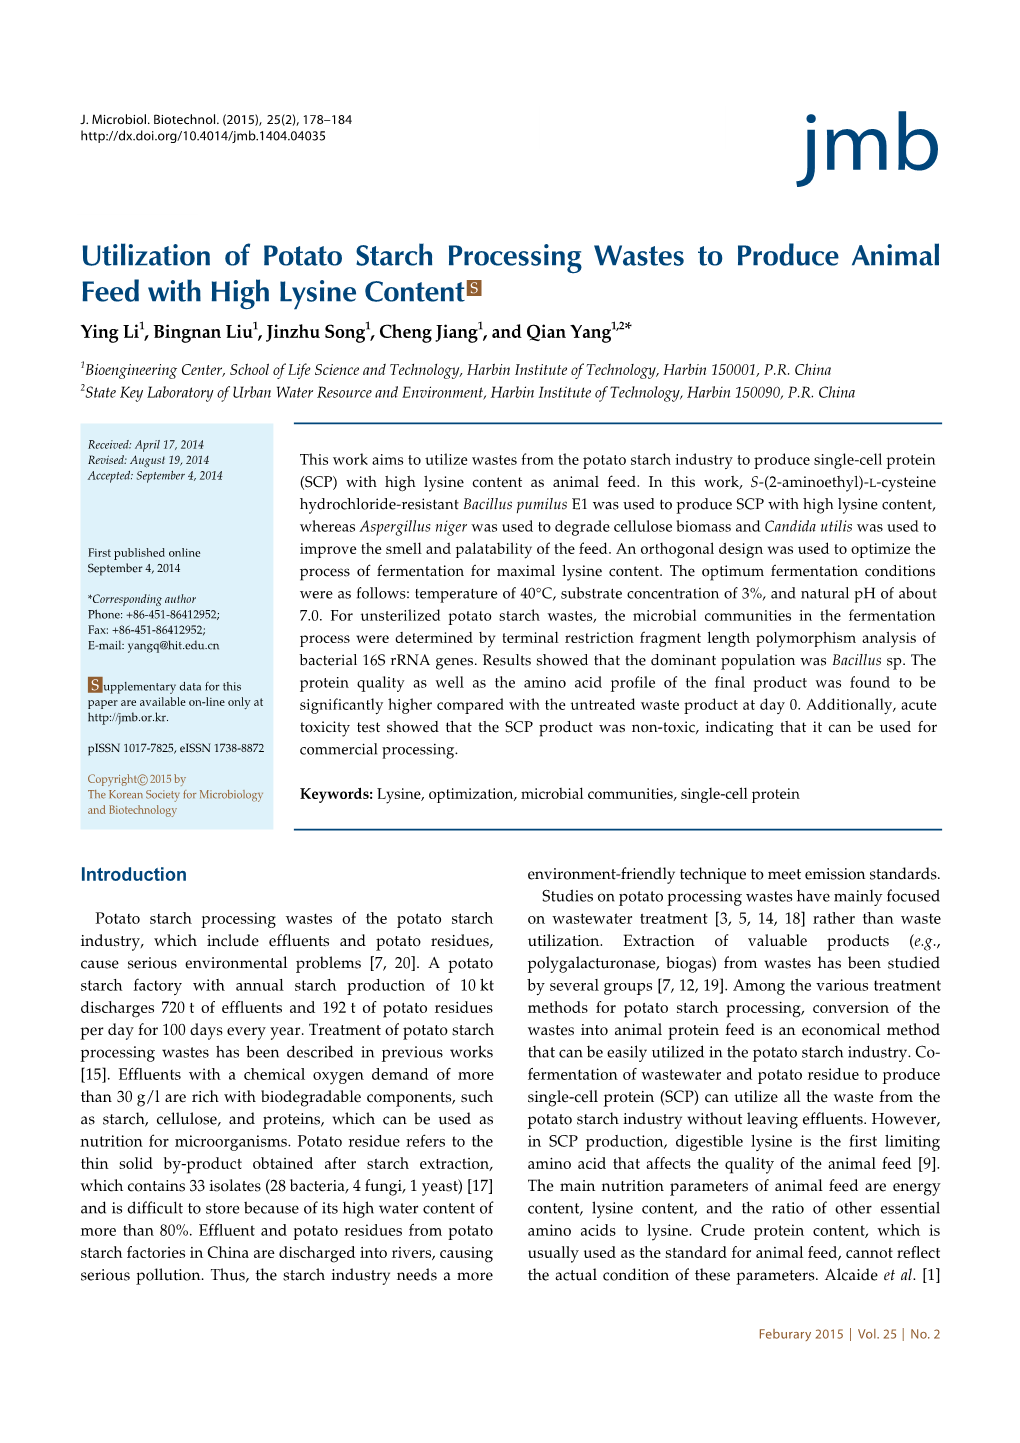 Utilization of Potato Starch Processing Wastes to Produce Animal Feed with High Lysine Content S Ying Li1, Bingnan Liu1, Jinzhu Song1, Cheng Jiang1, and Qian Yang1,2*